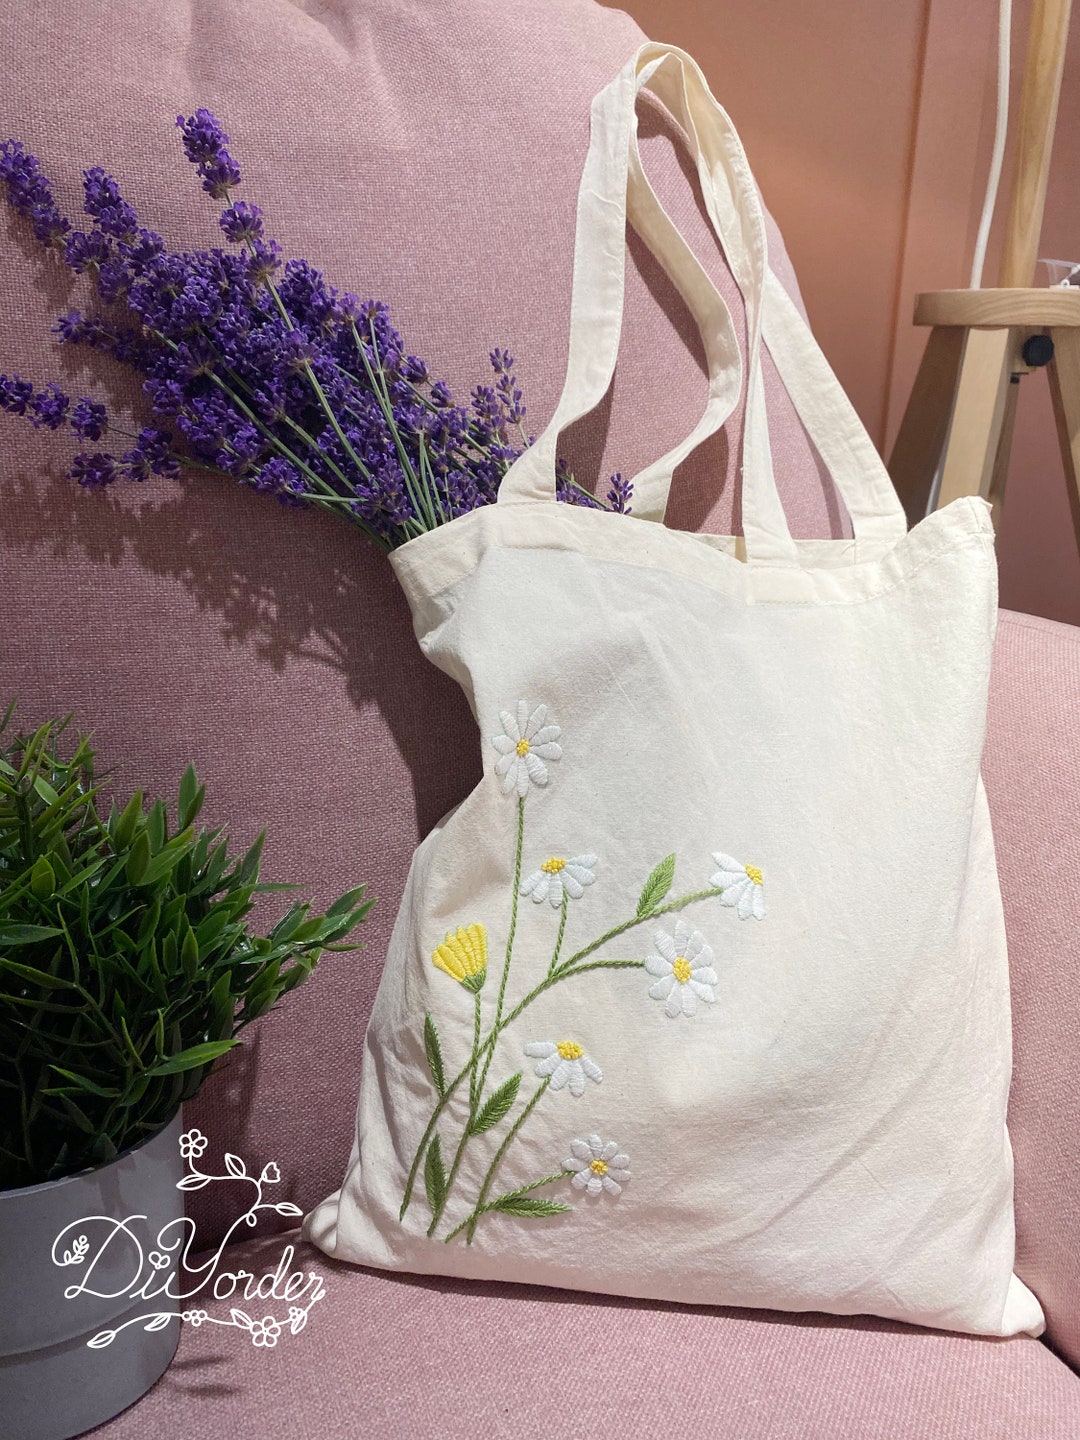 DIY Embroidery Bag Kit Handmade Girls Gift Organizer Bag Tote Bag for  Beginner